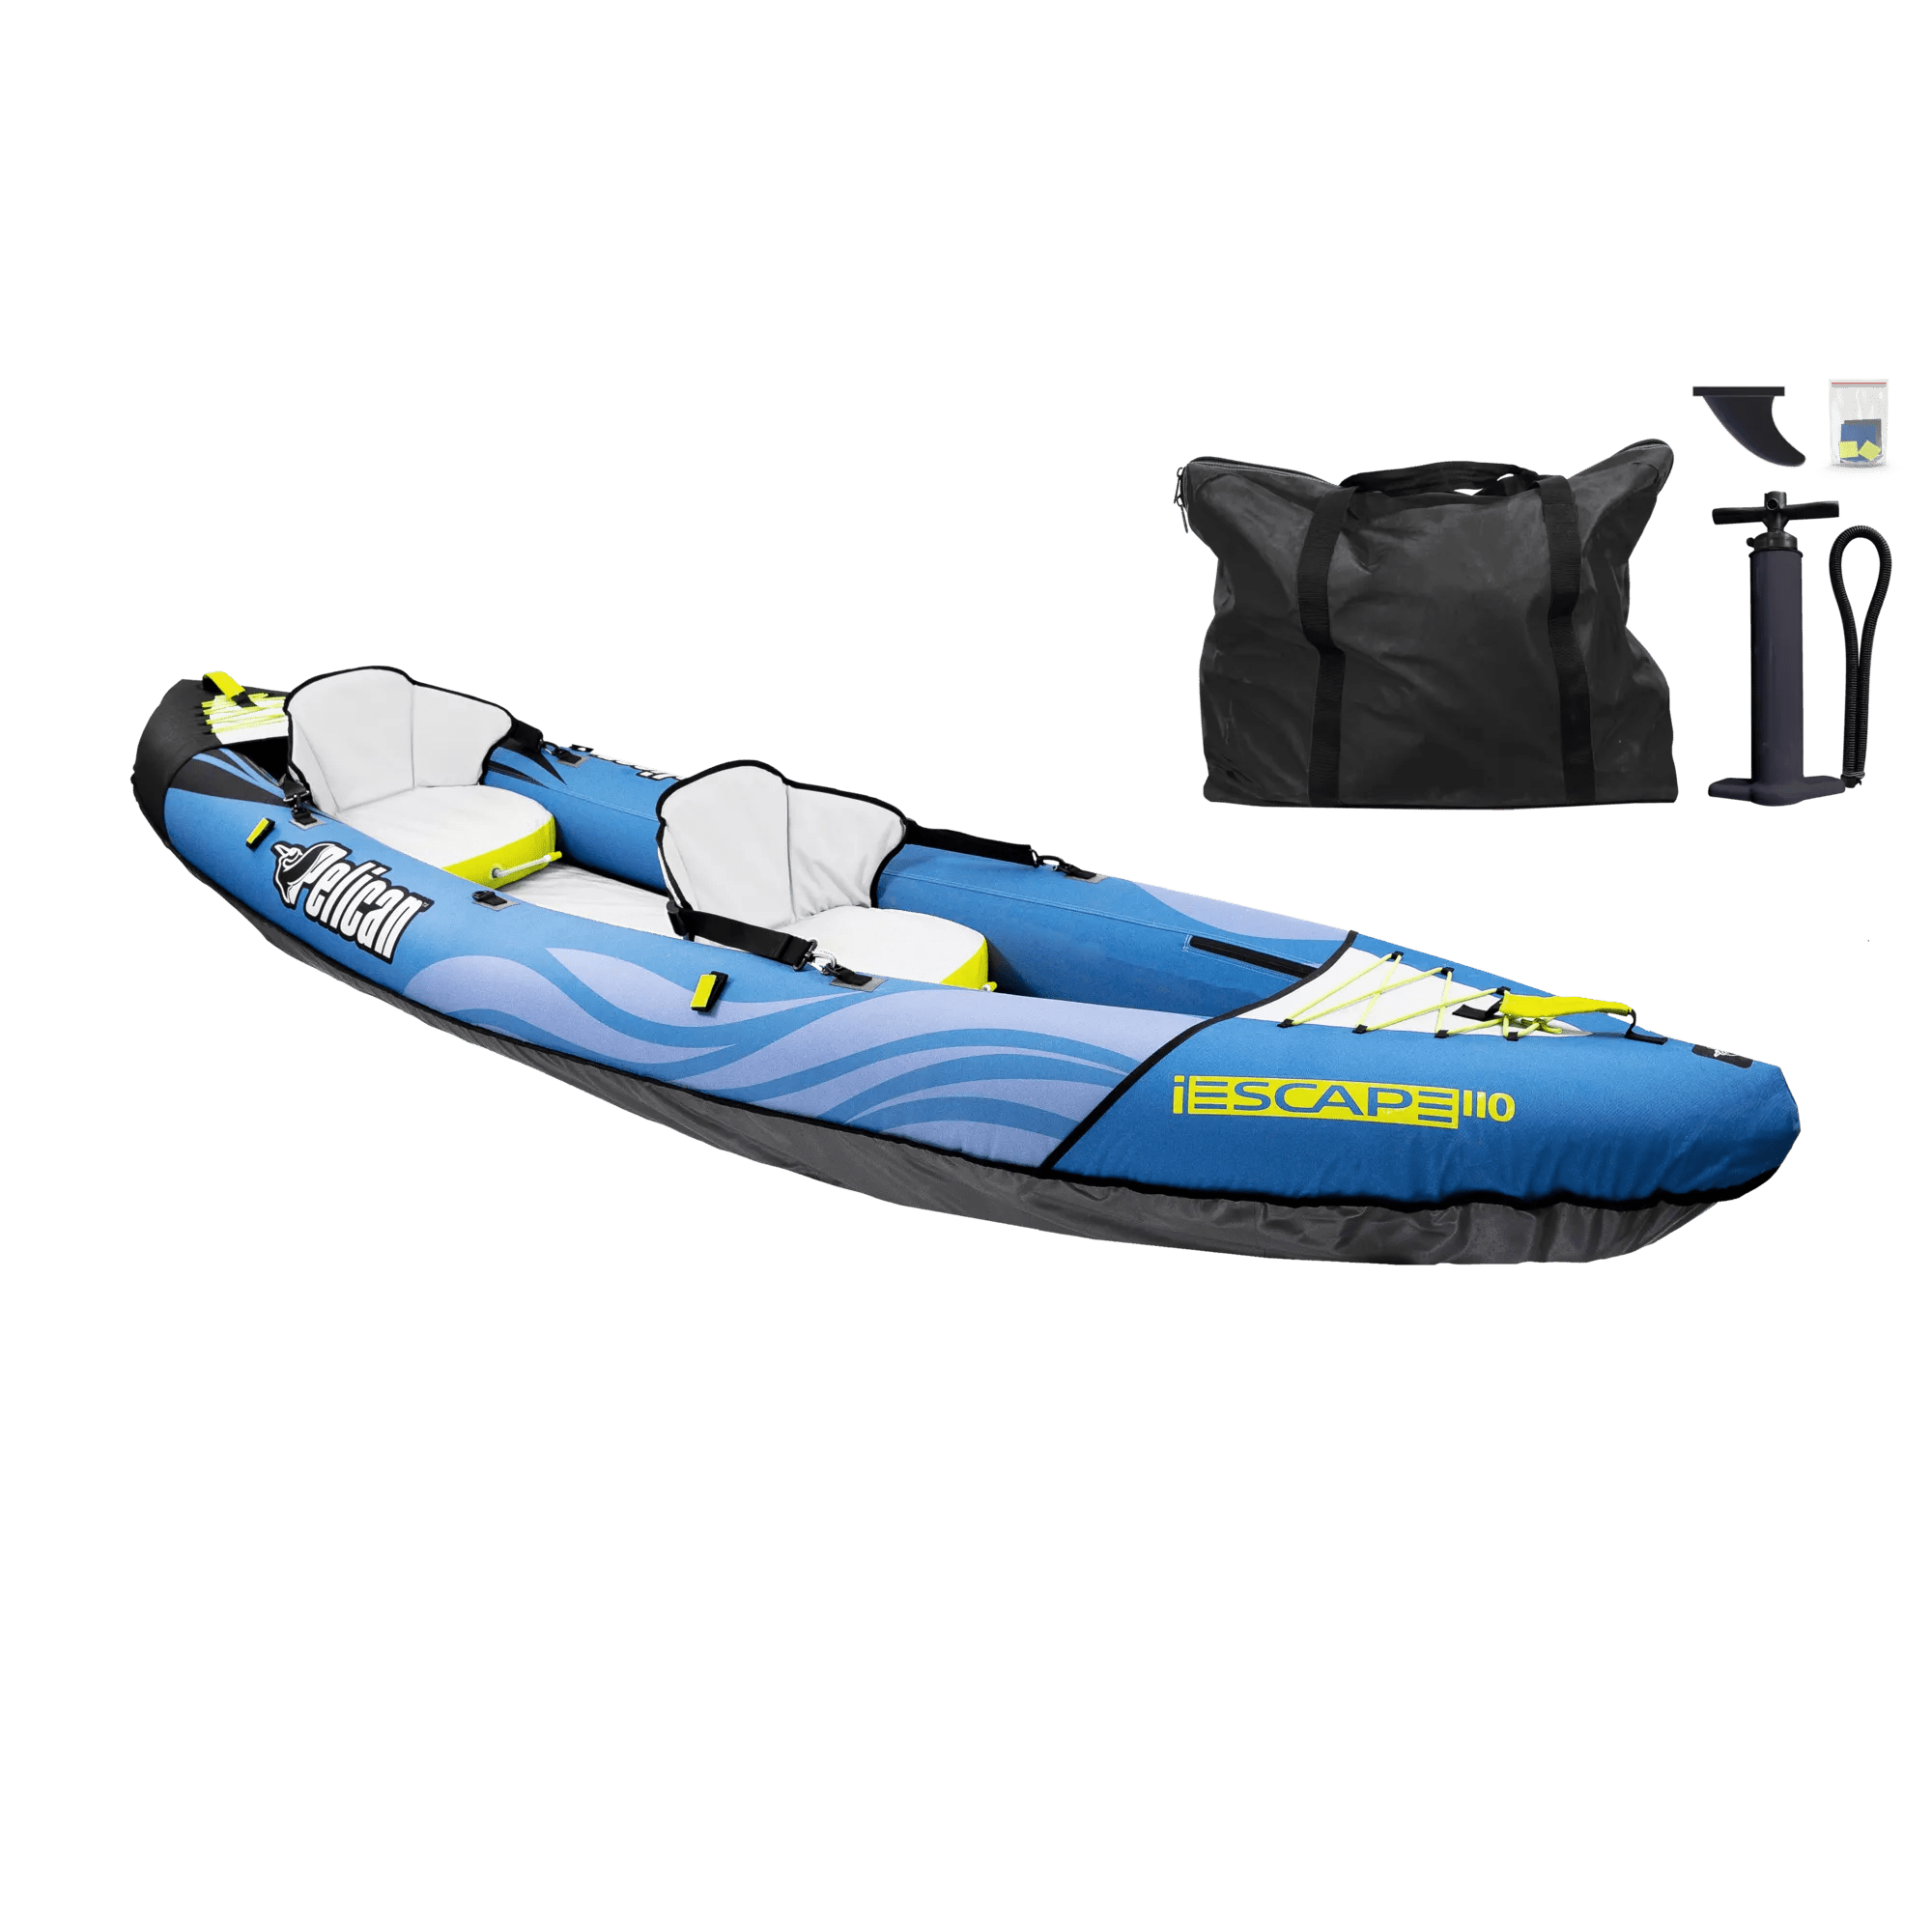 PELICAN - Kayak récréatif convertible tandem gonflable iESCAPE 110 - Blue - MMG11P104 - ISO